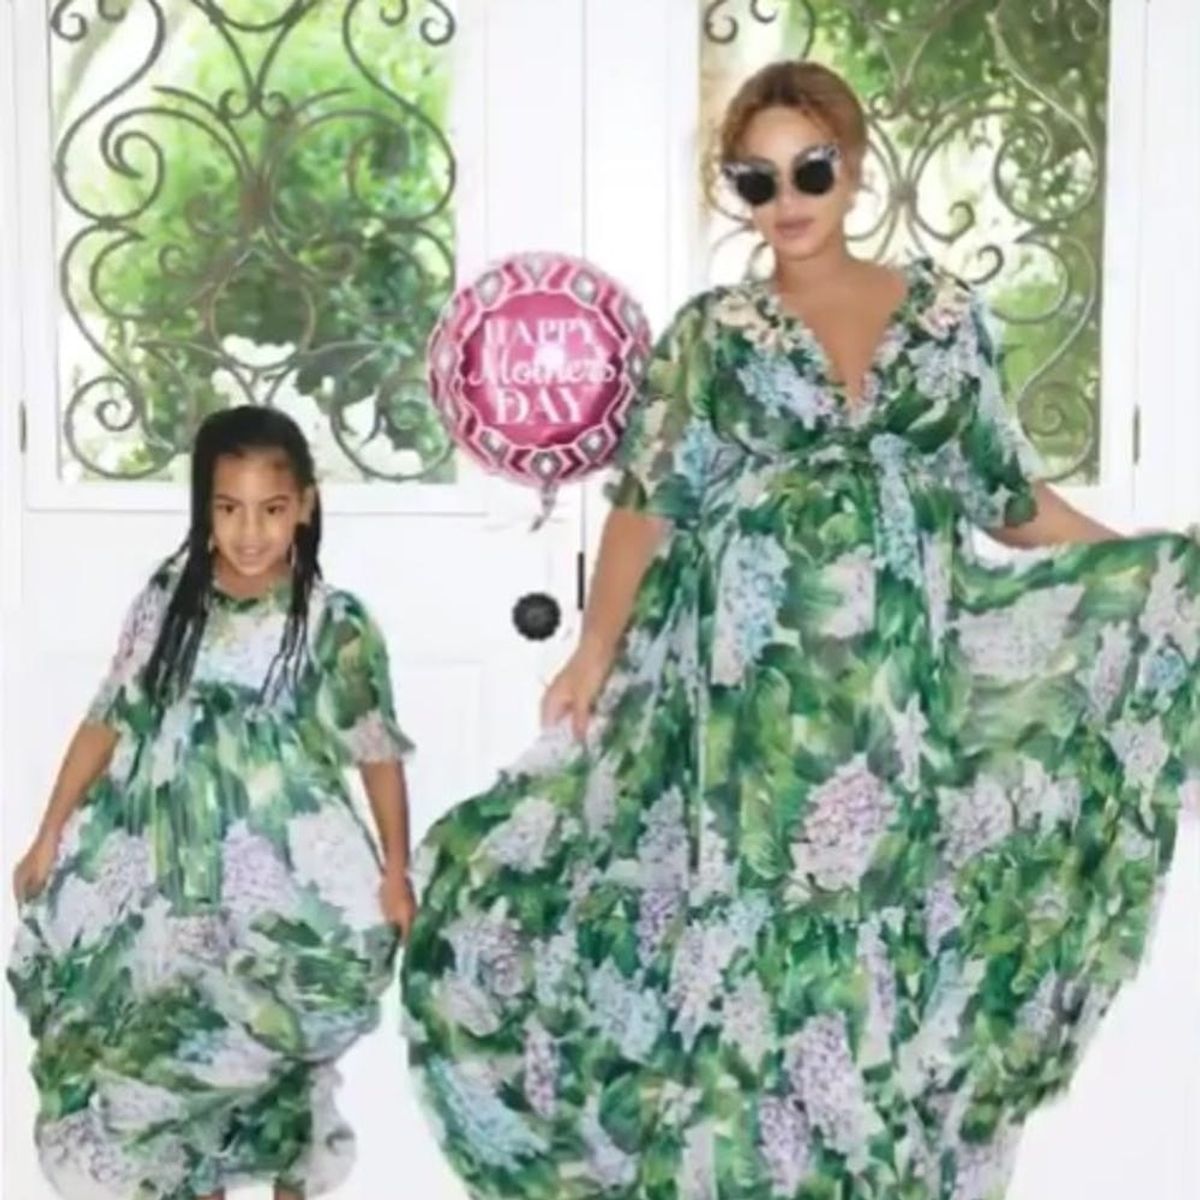 Beyoncé’s Mom Reveals Blue Ivy Is a “Proud” Big Sister